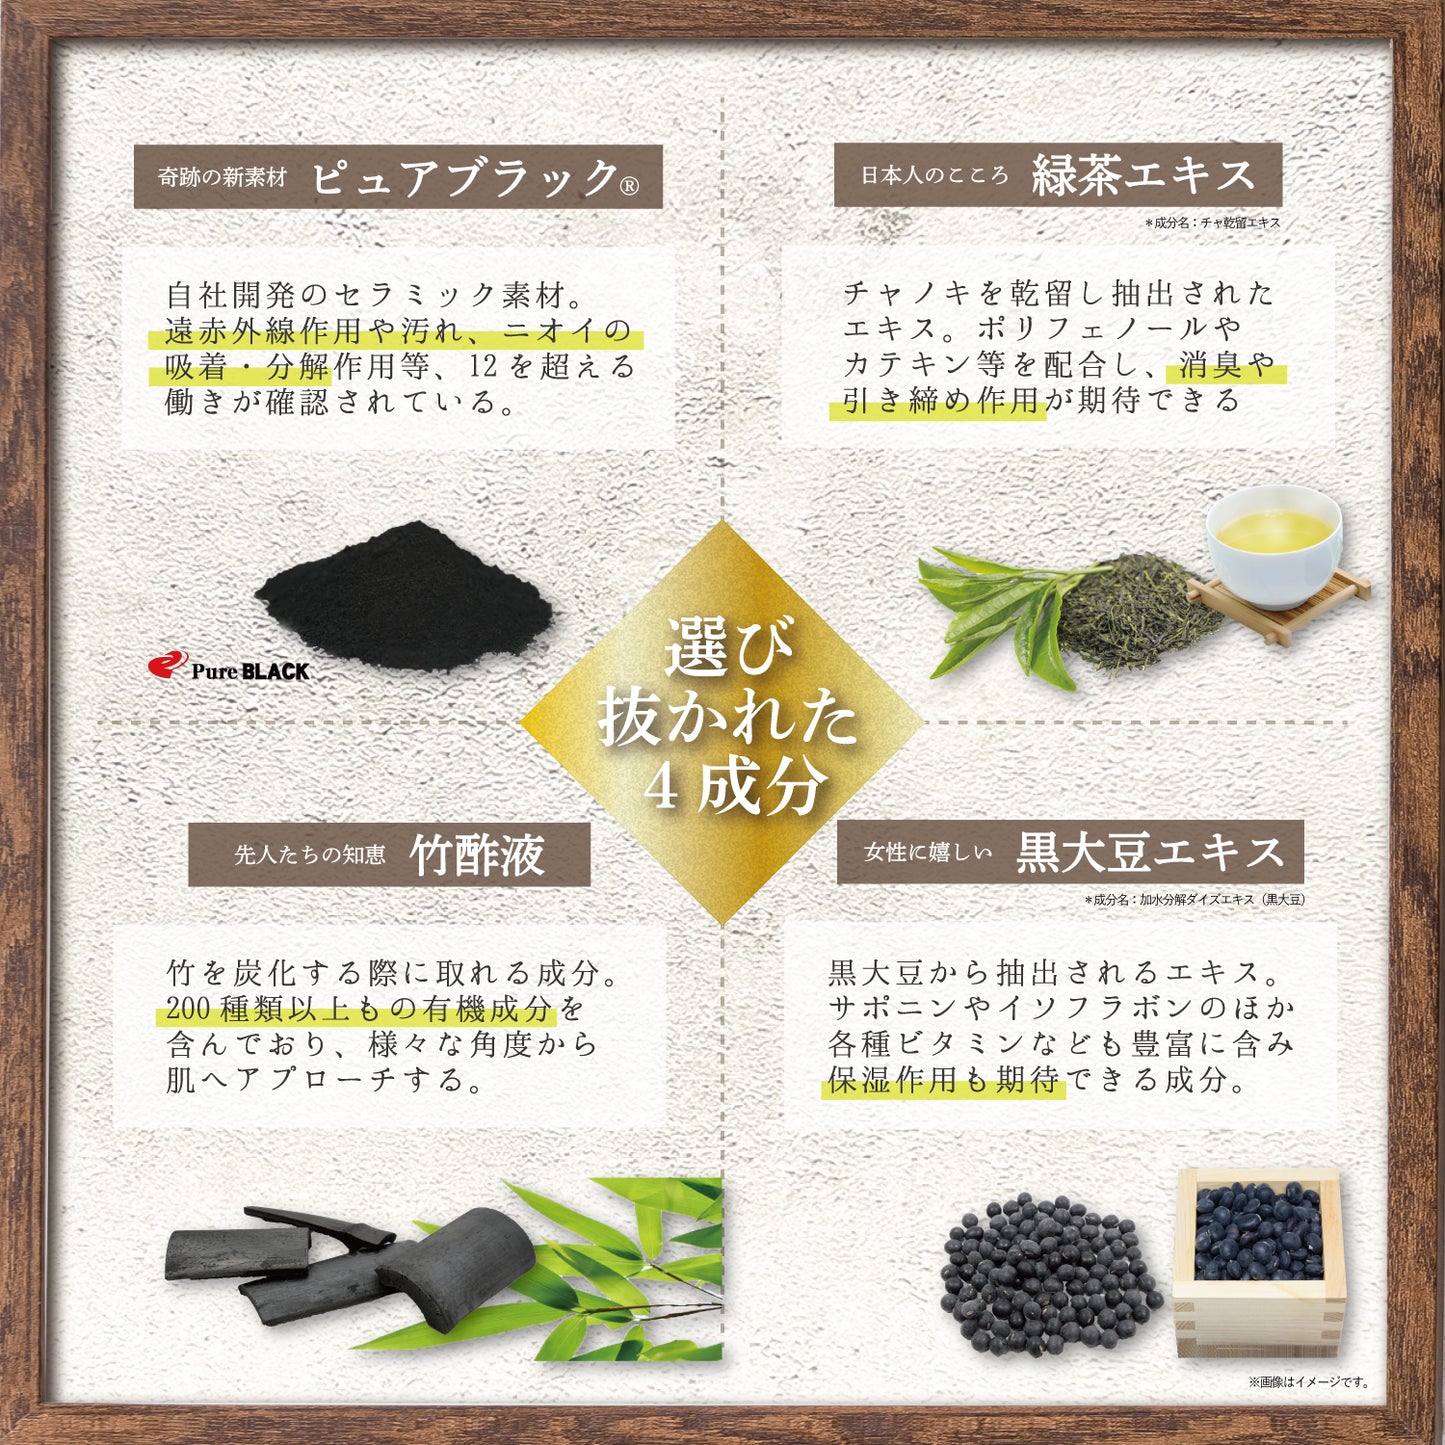 ピュアブラック、緑茶エキス、竹酢液、黒大豆エキス配合